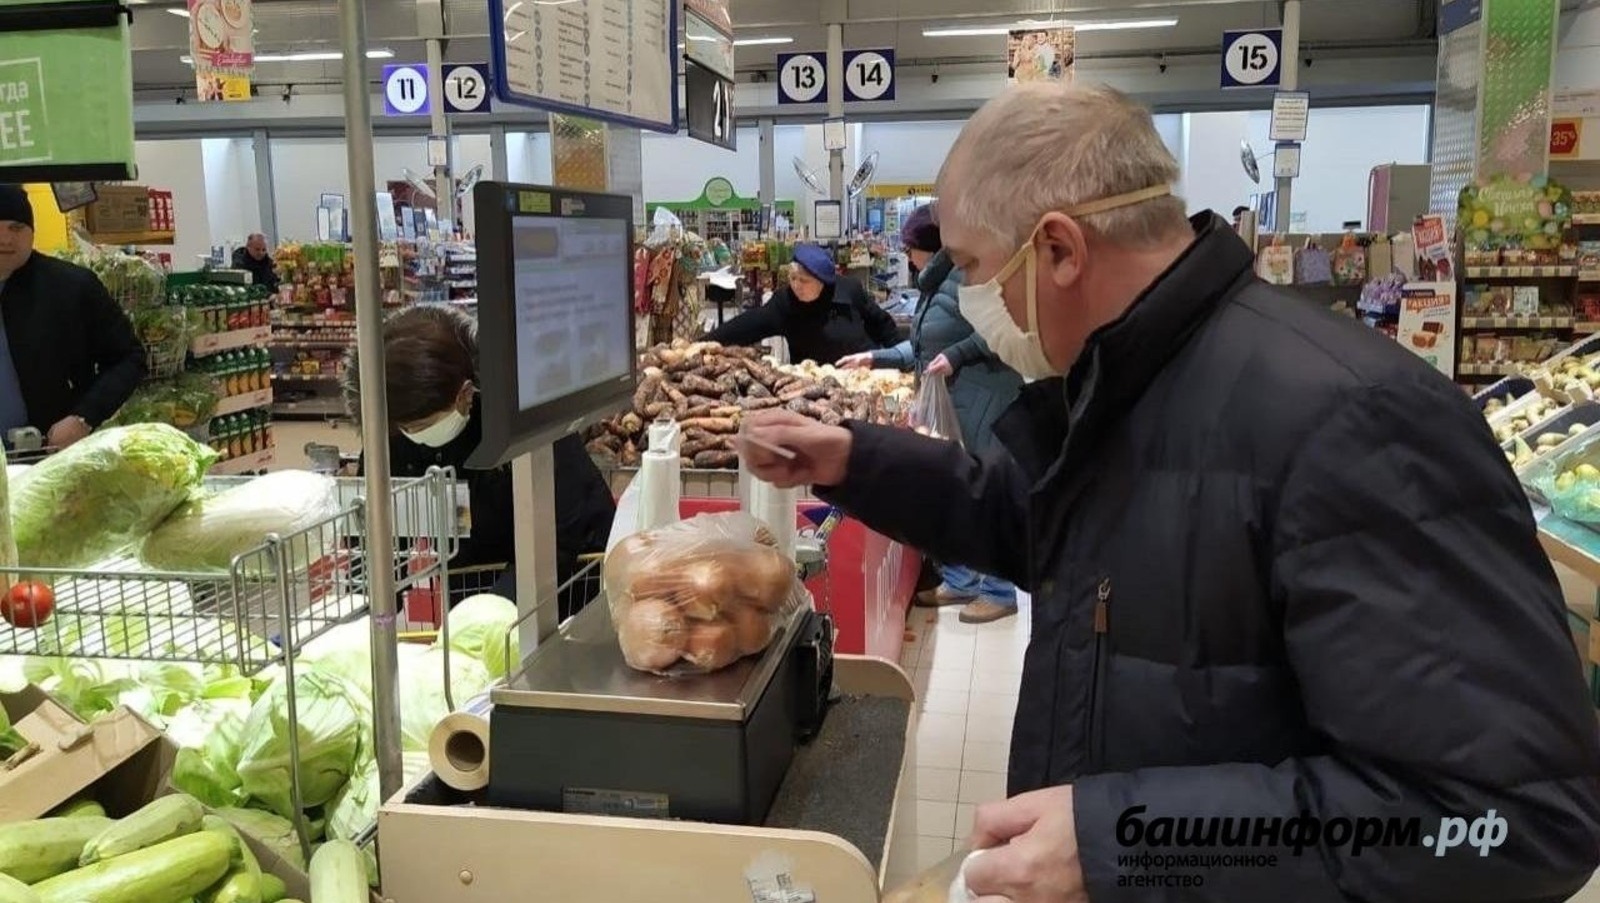 Башкирия вносит весомый вклад в обеспечение продовольственной безопасности России — эксперт